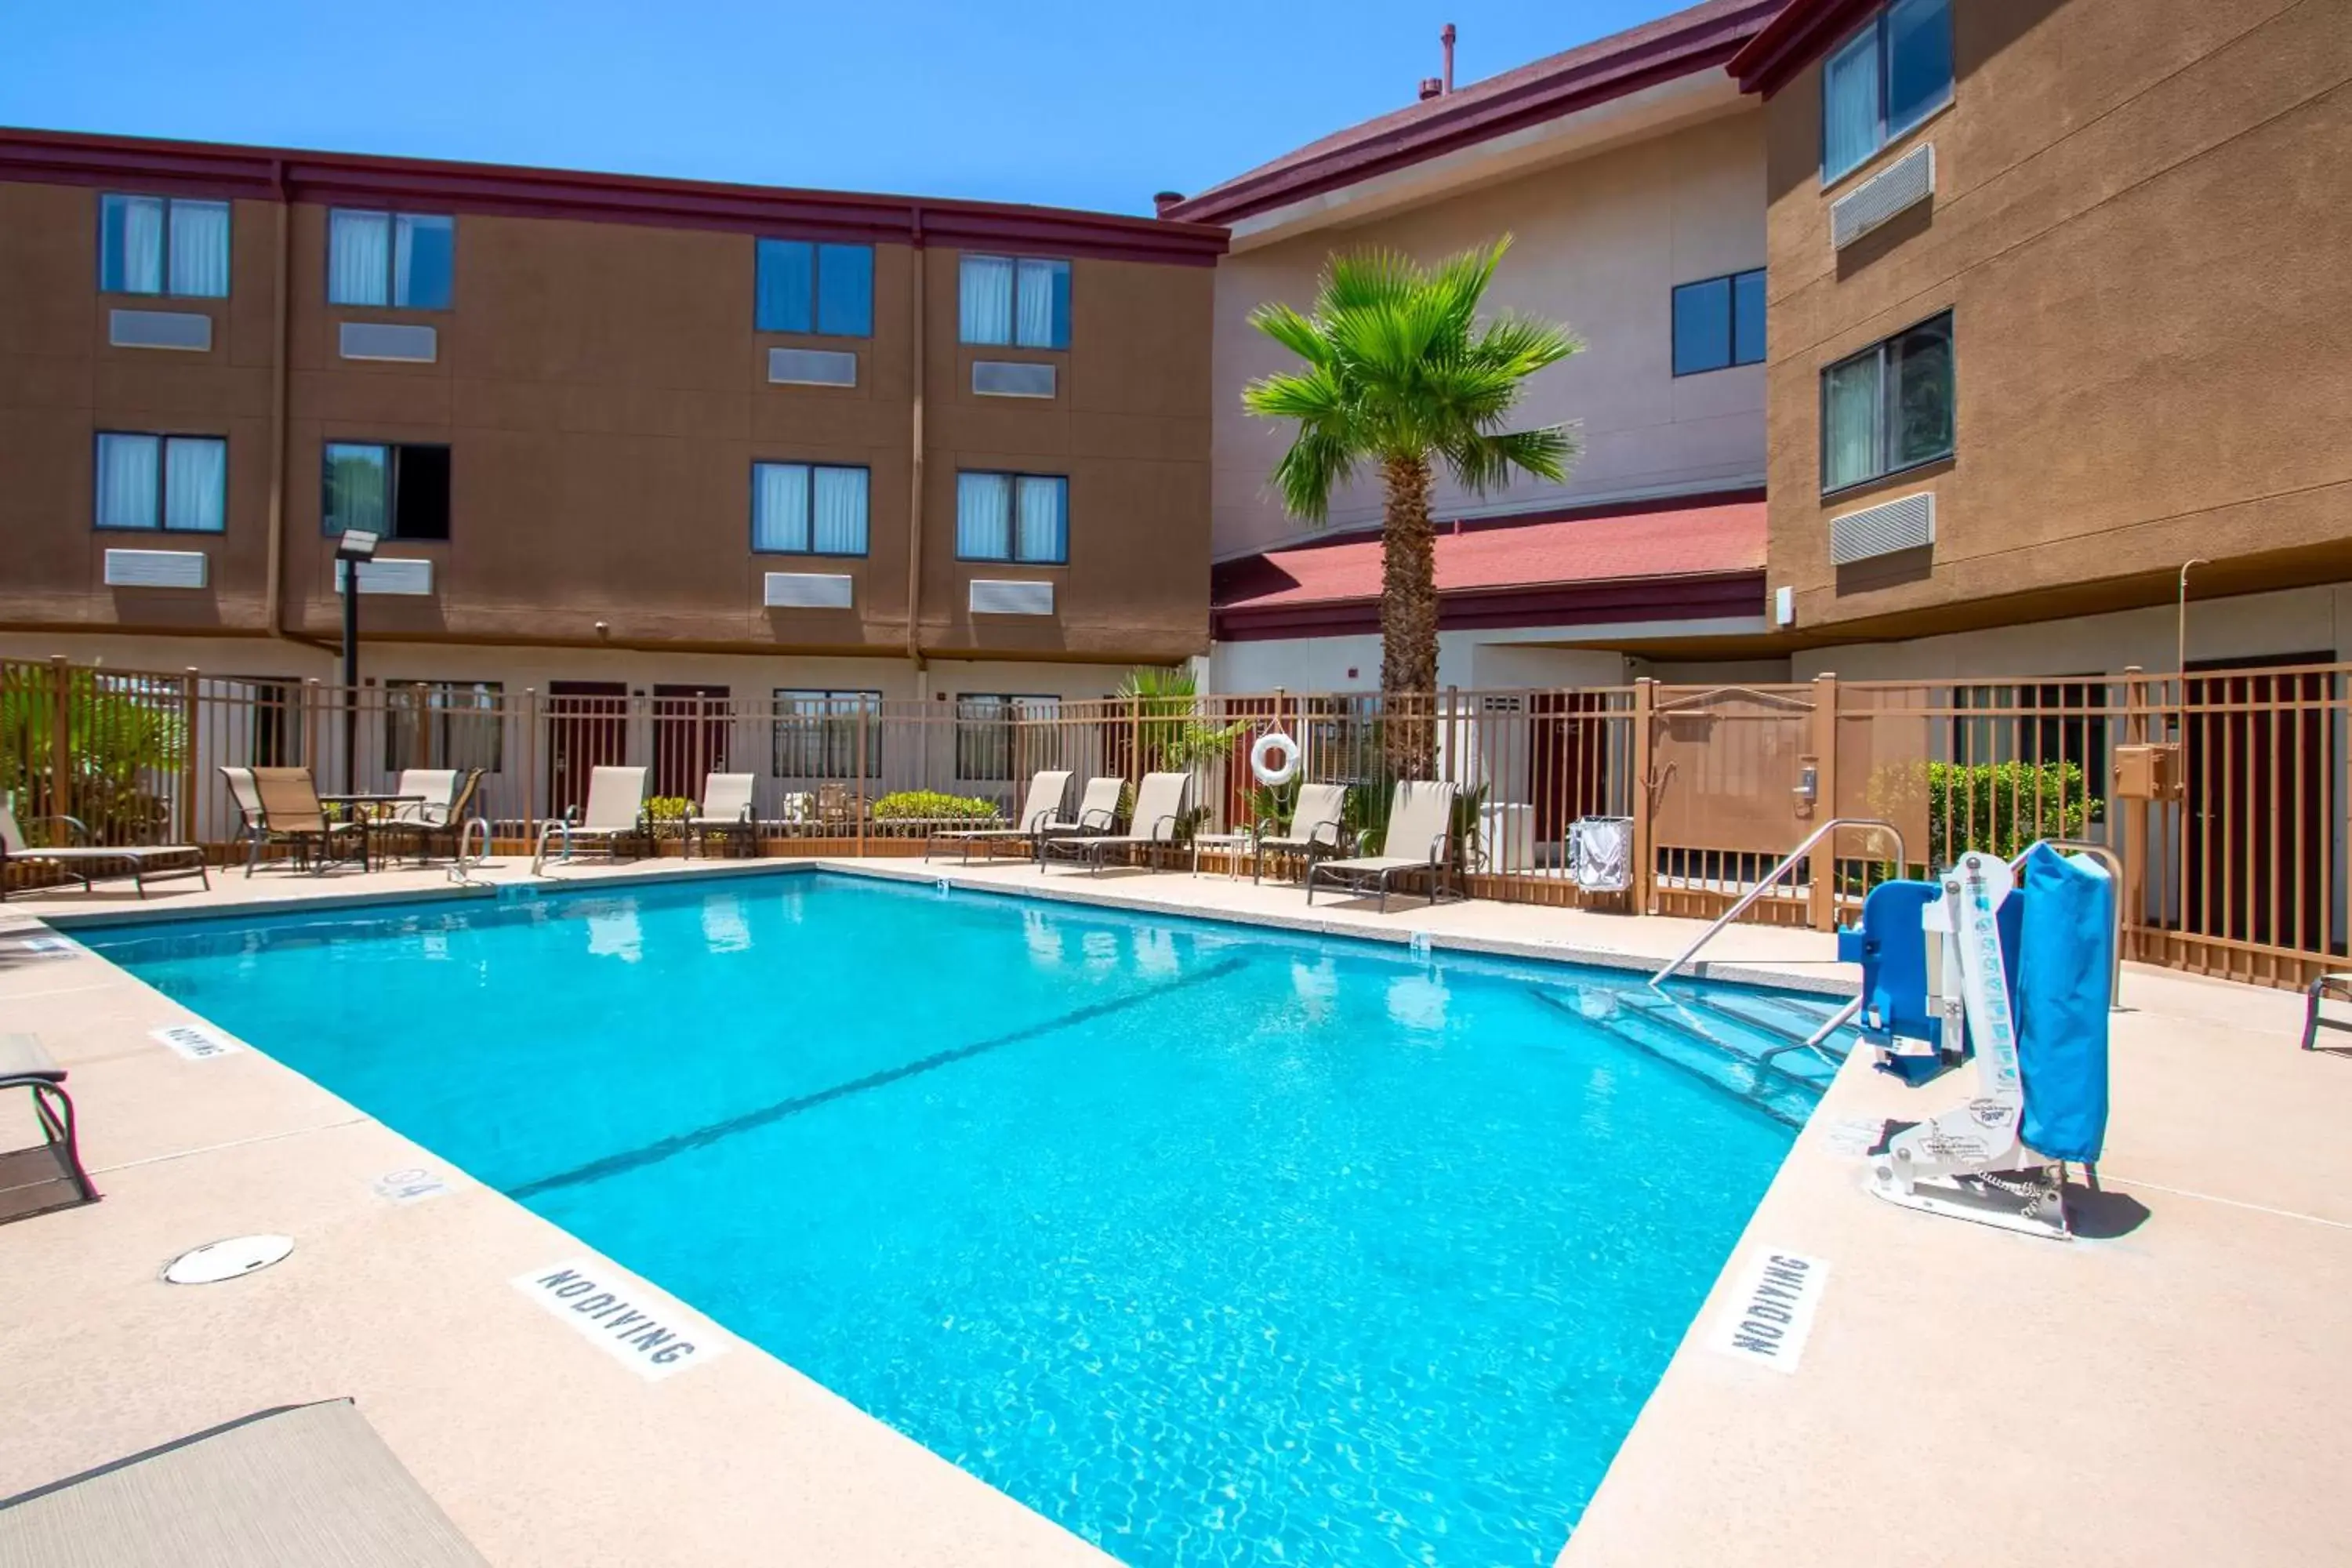 Swimming Pool in Red Roof Inn El Paso West